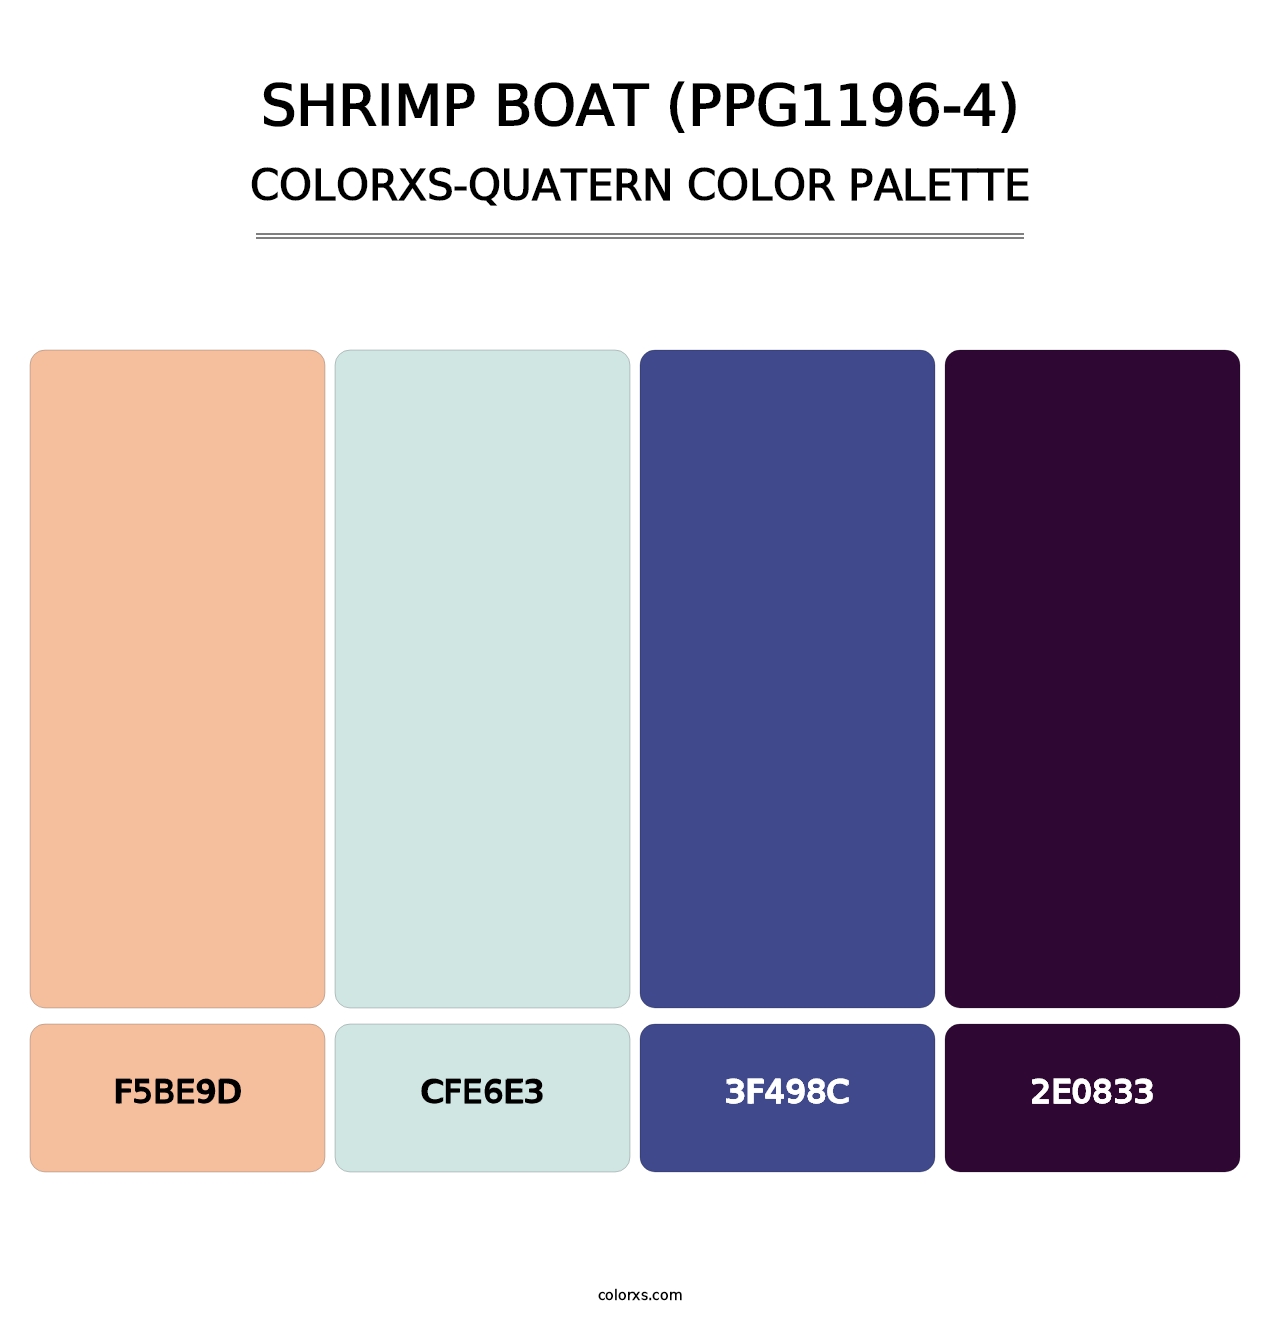 Shrimp Boat (PPG1196-4) - Colorxs Quatern Palette